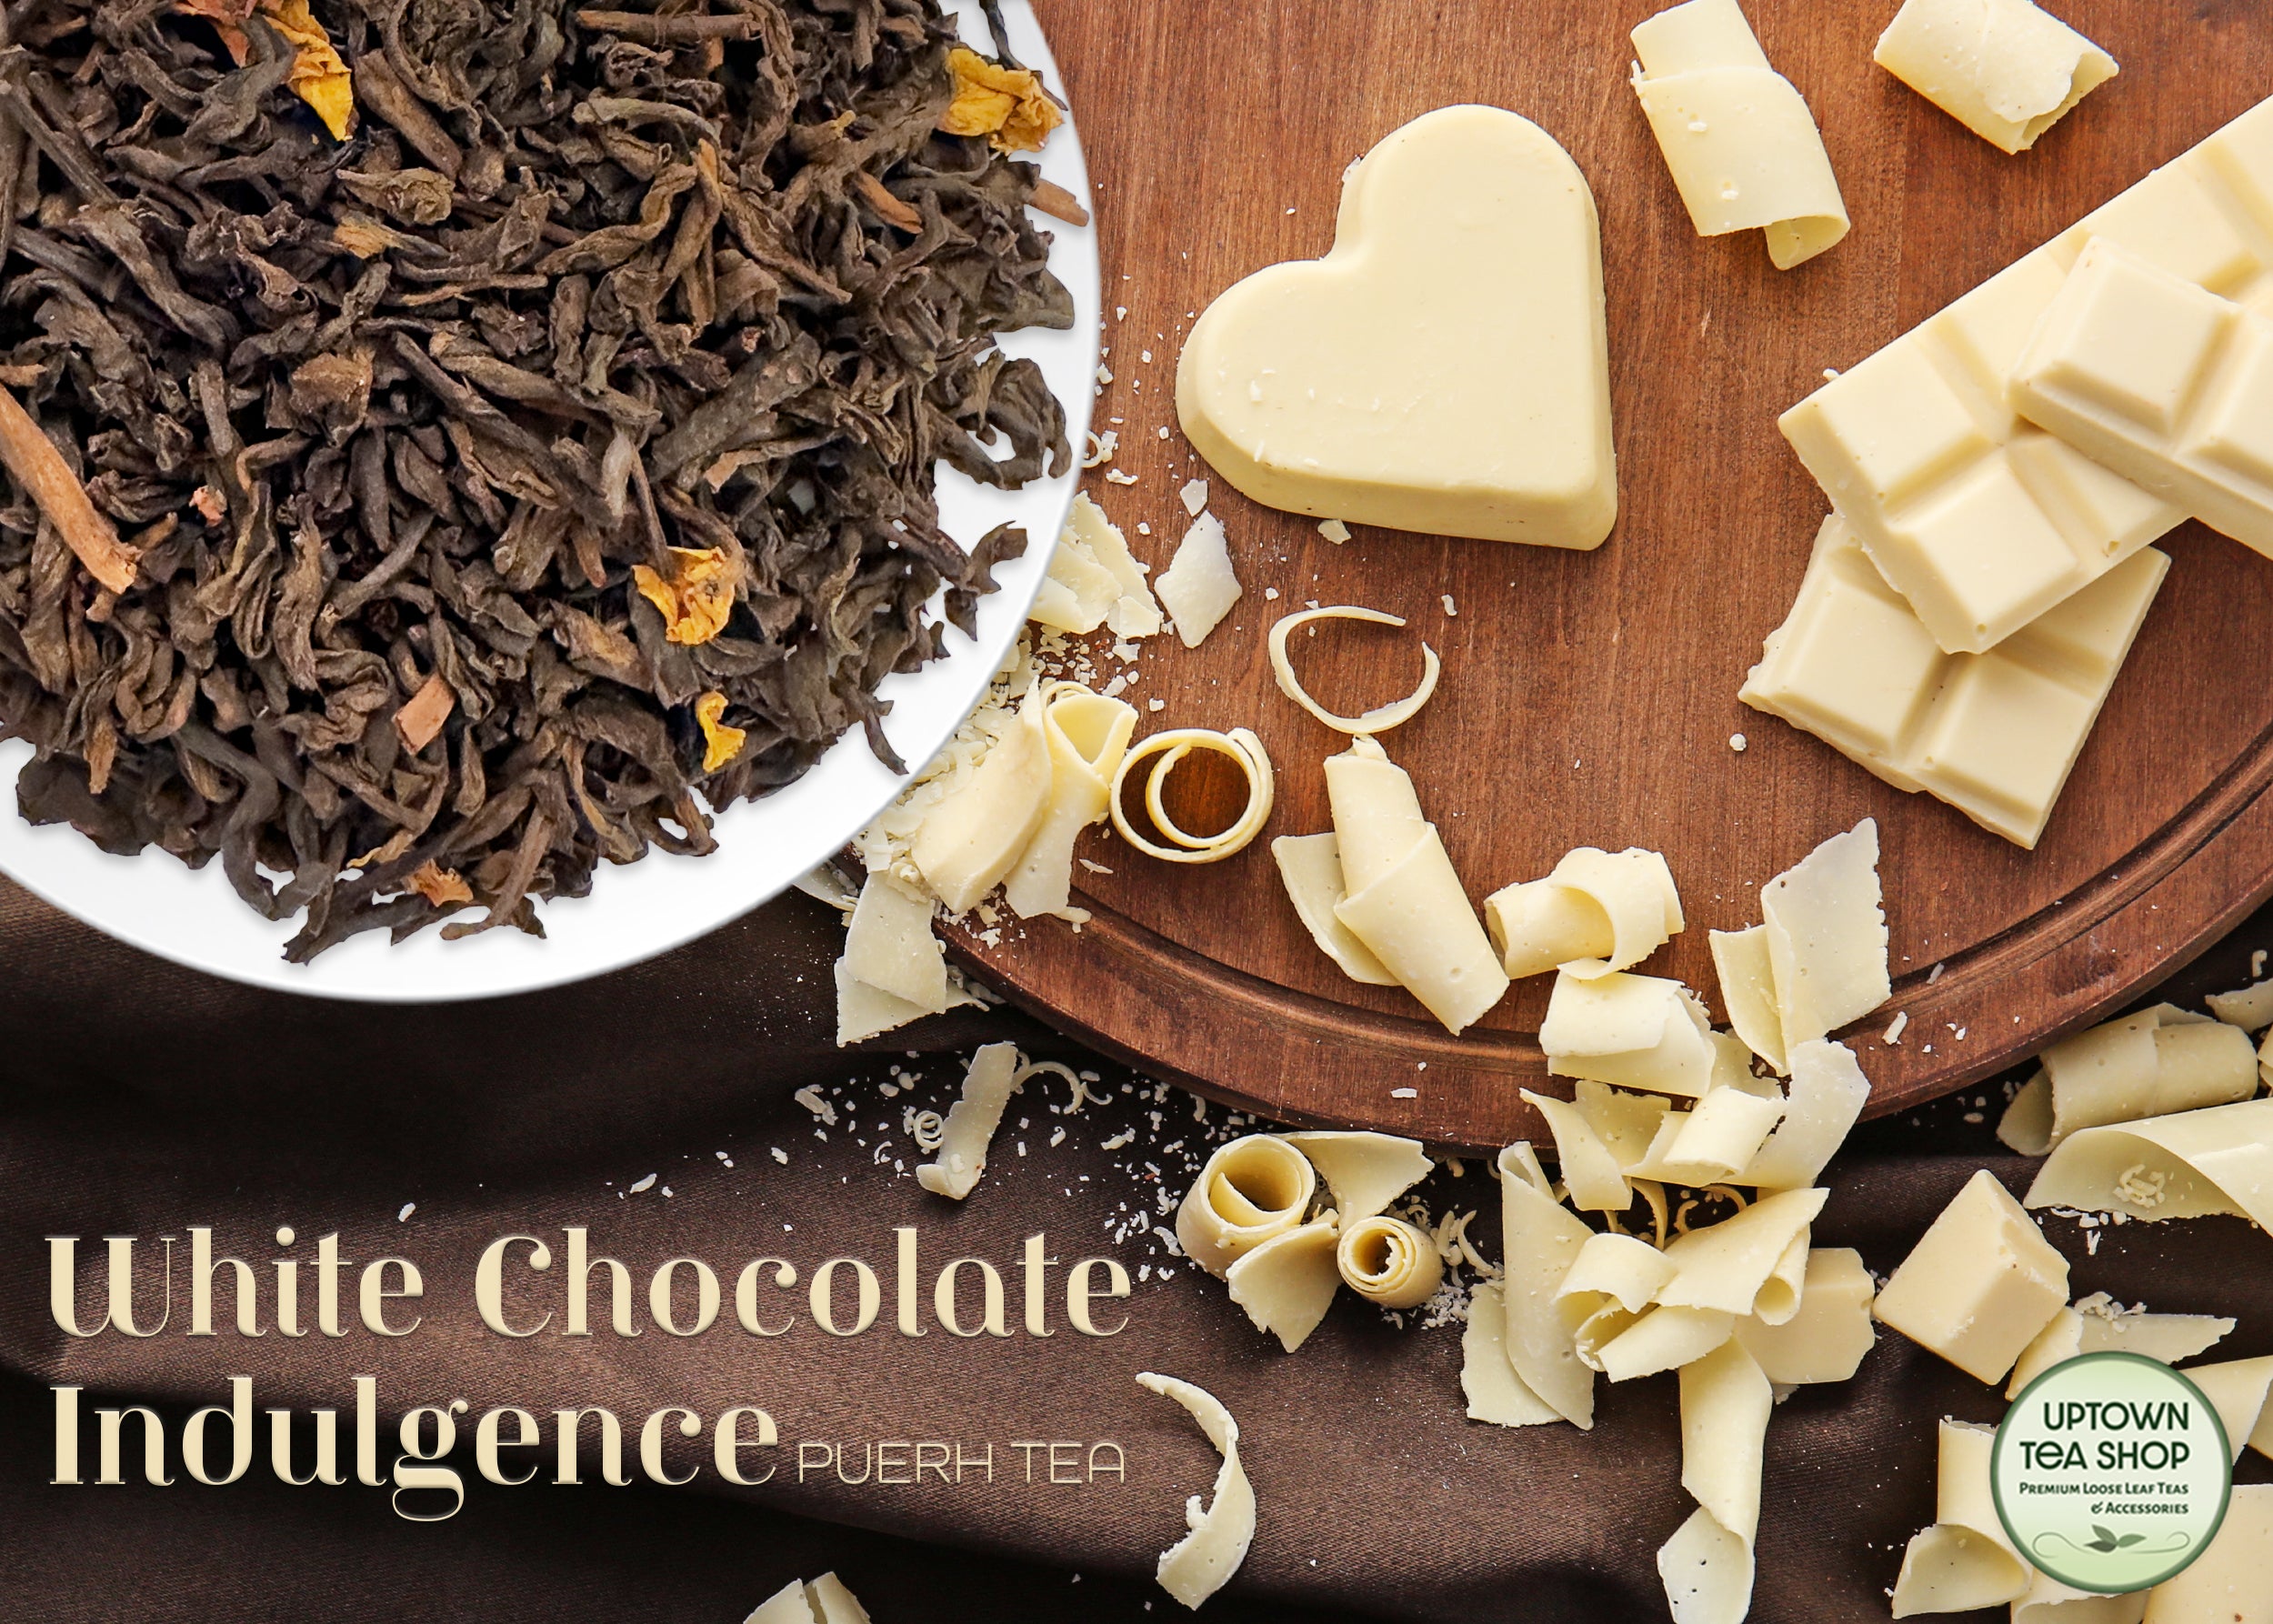 White Chocolate Indulgence Puerh Tea